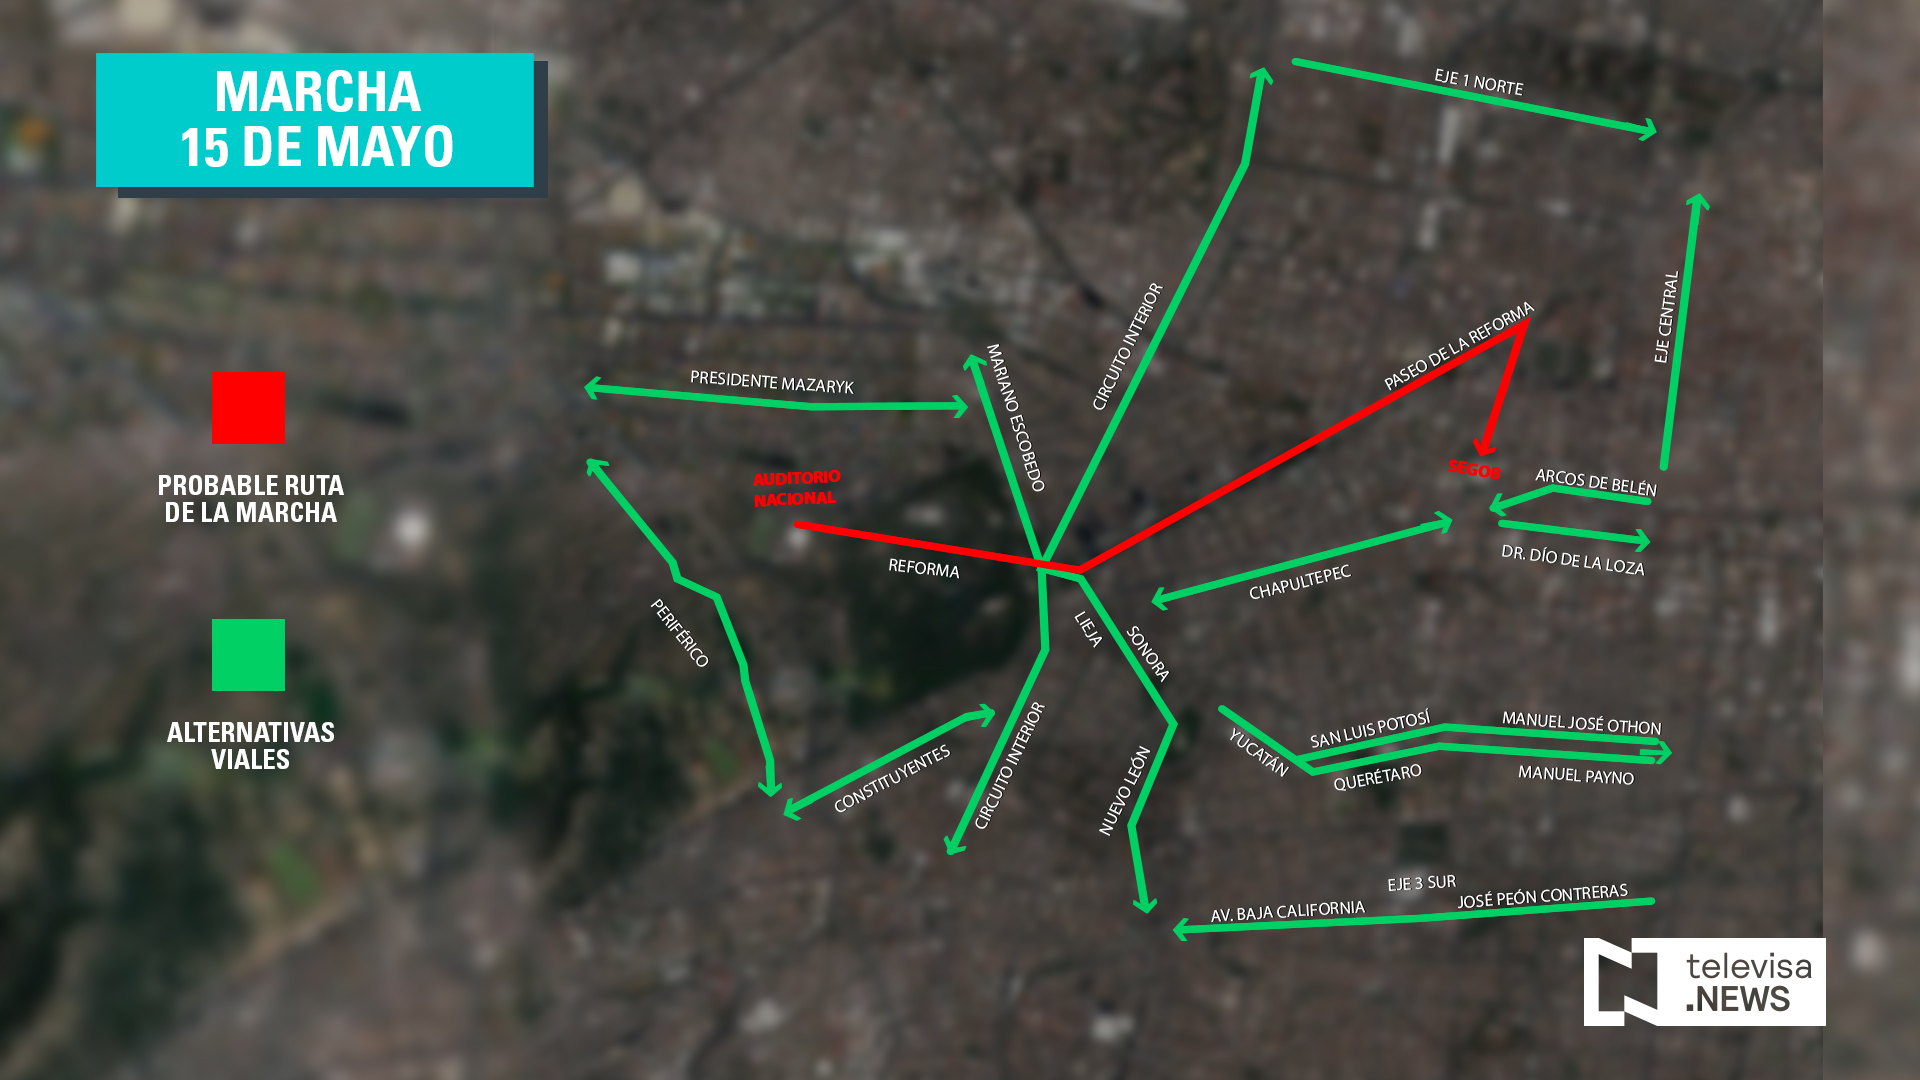 Mapa por donde avanza la marcha en Reforma